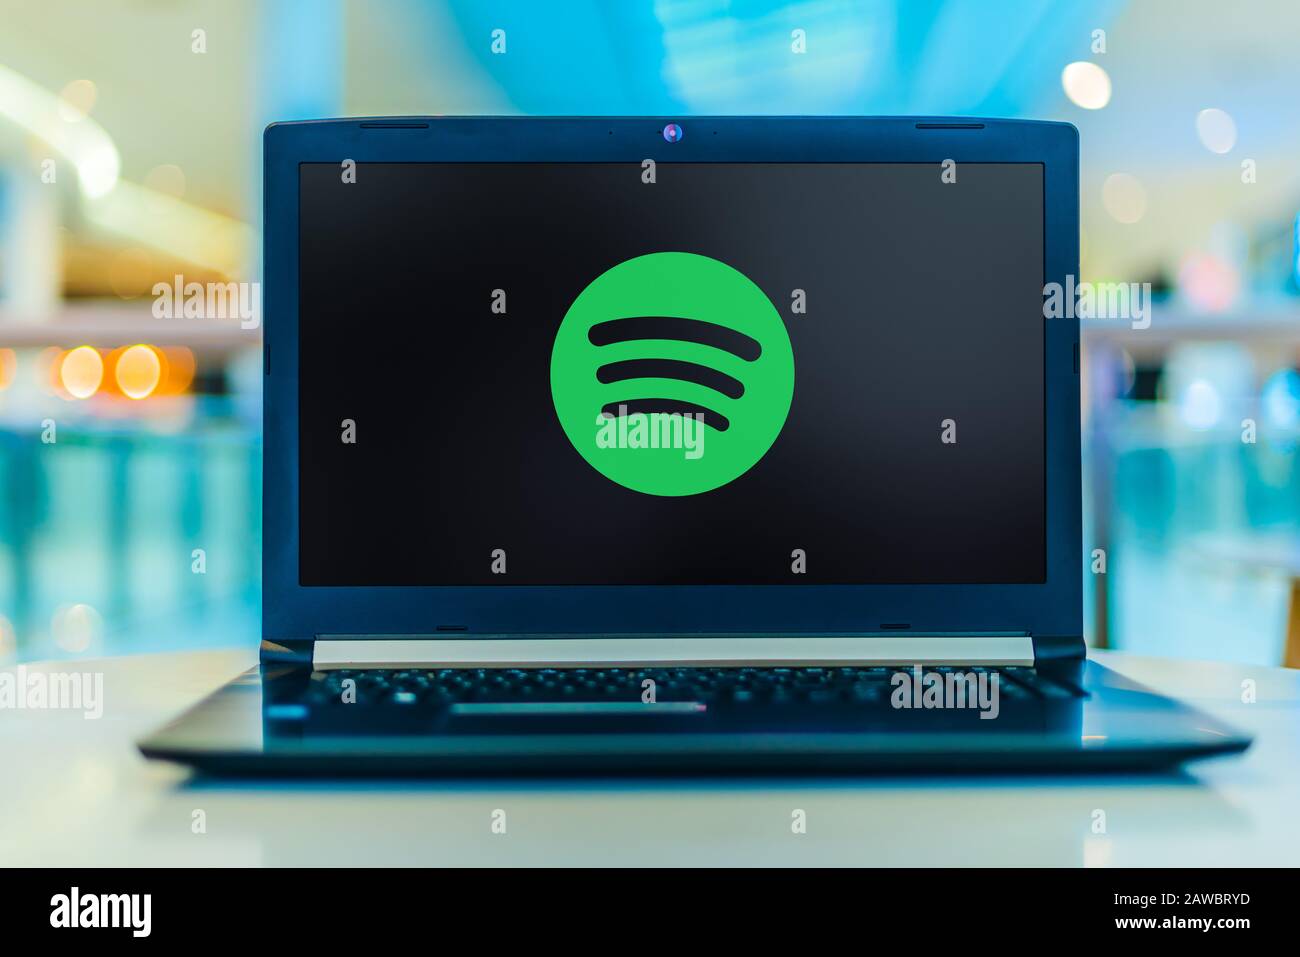 Poznan, POL - 30 JANVIER 2020: Ordinateur portable affichant le logo de Spotify, une plate-forme de diffusion audio suédoise qui fournit de la musique et des podcasts de recor Banque D'Images